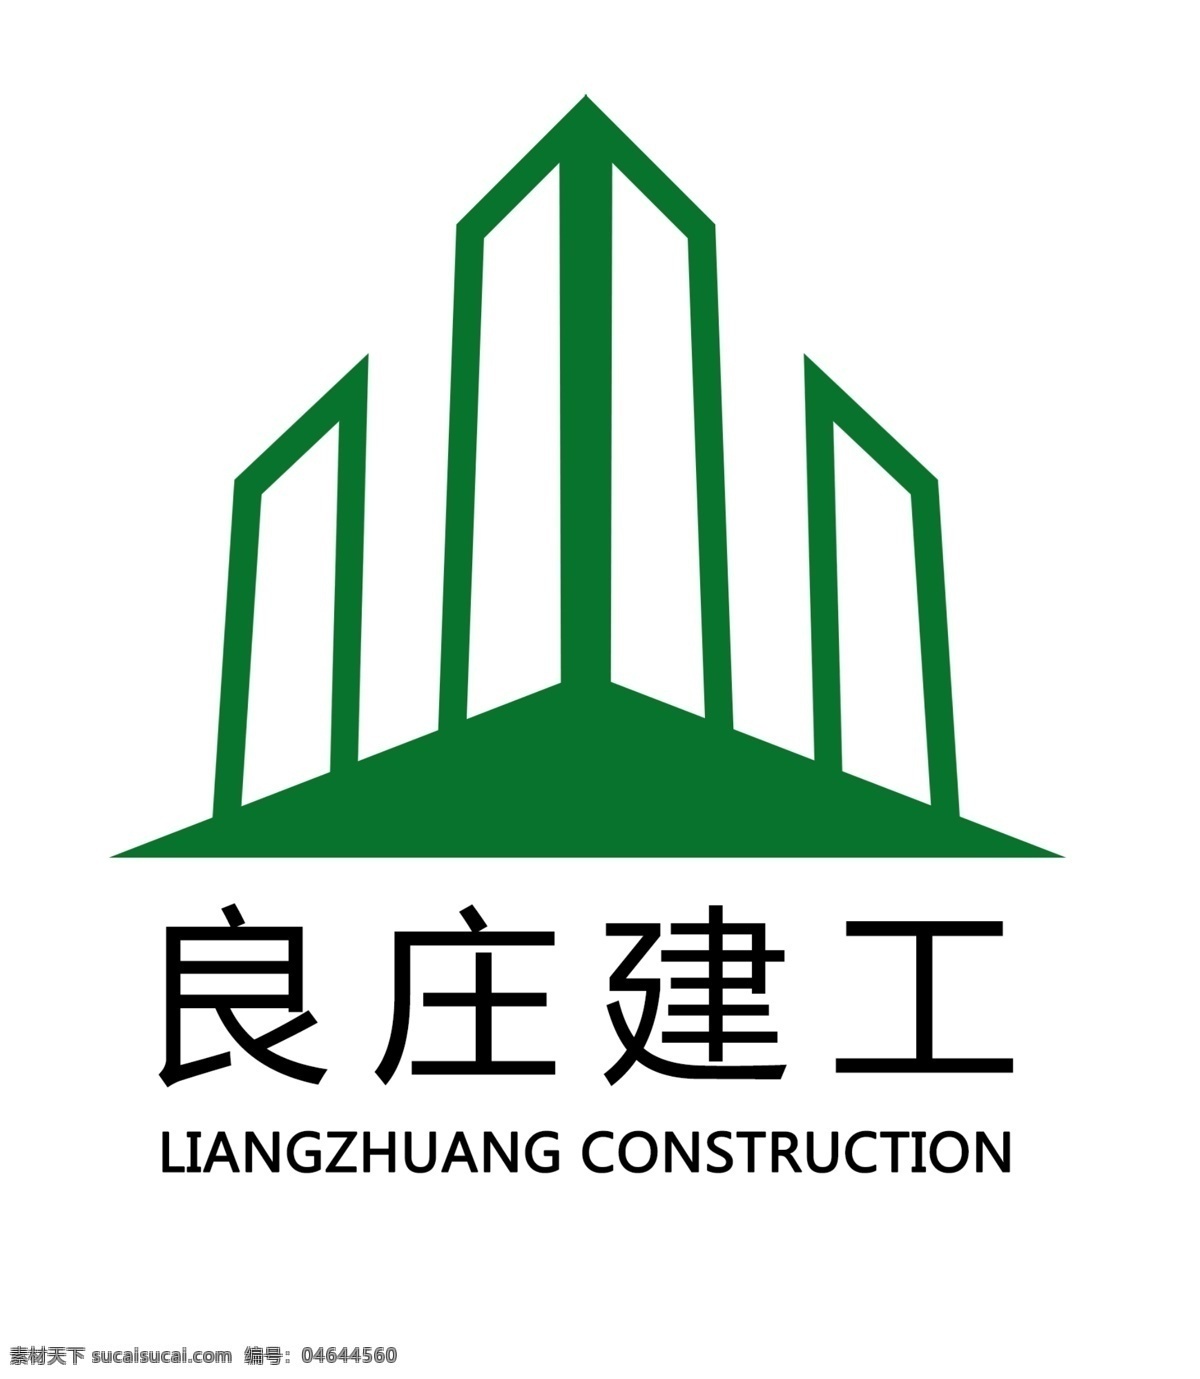 建筑 公司 logo 模版下载 建筑公司 建工 绿色 房地产 工程 logo设计